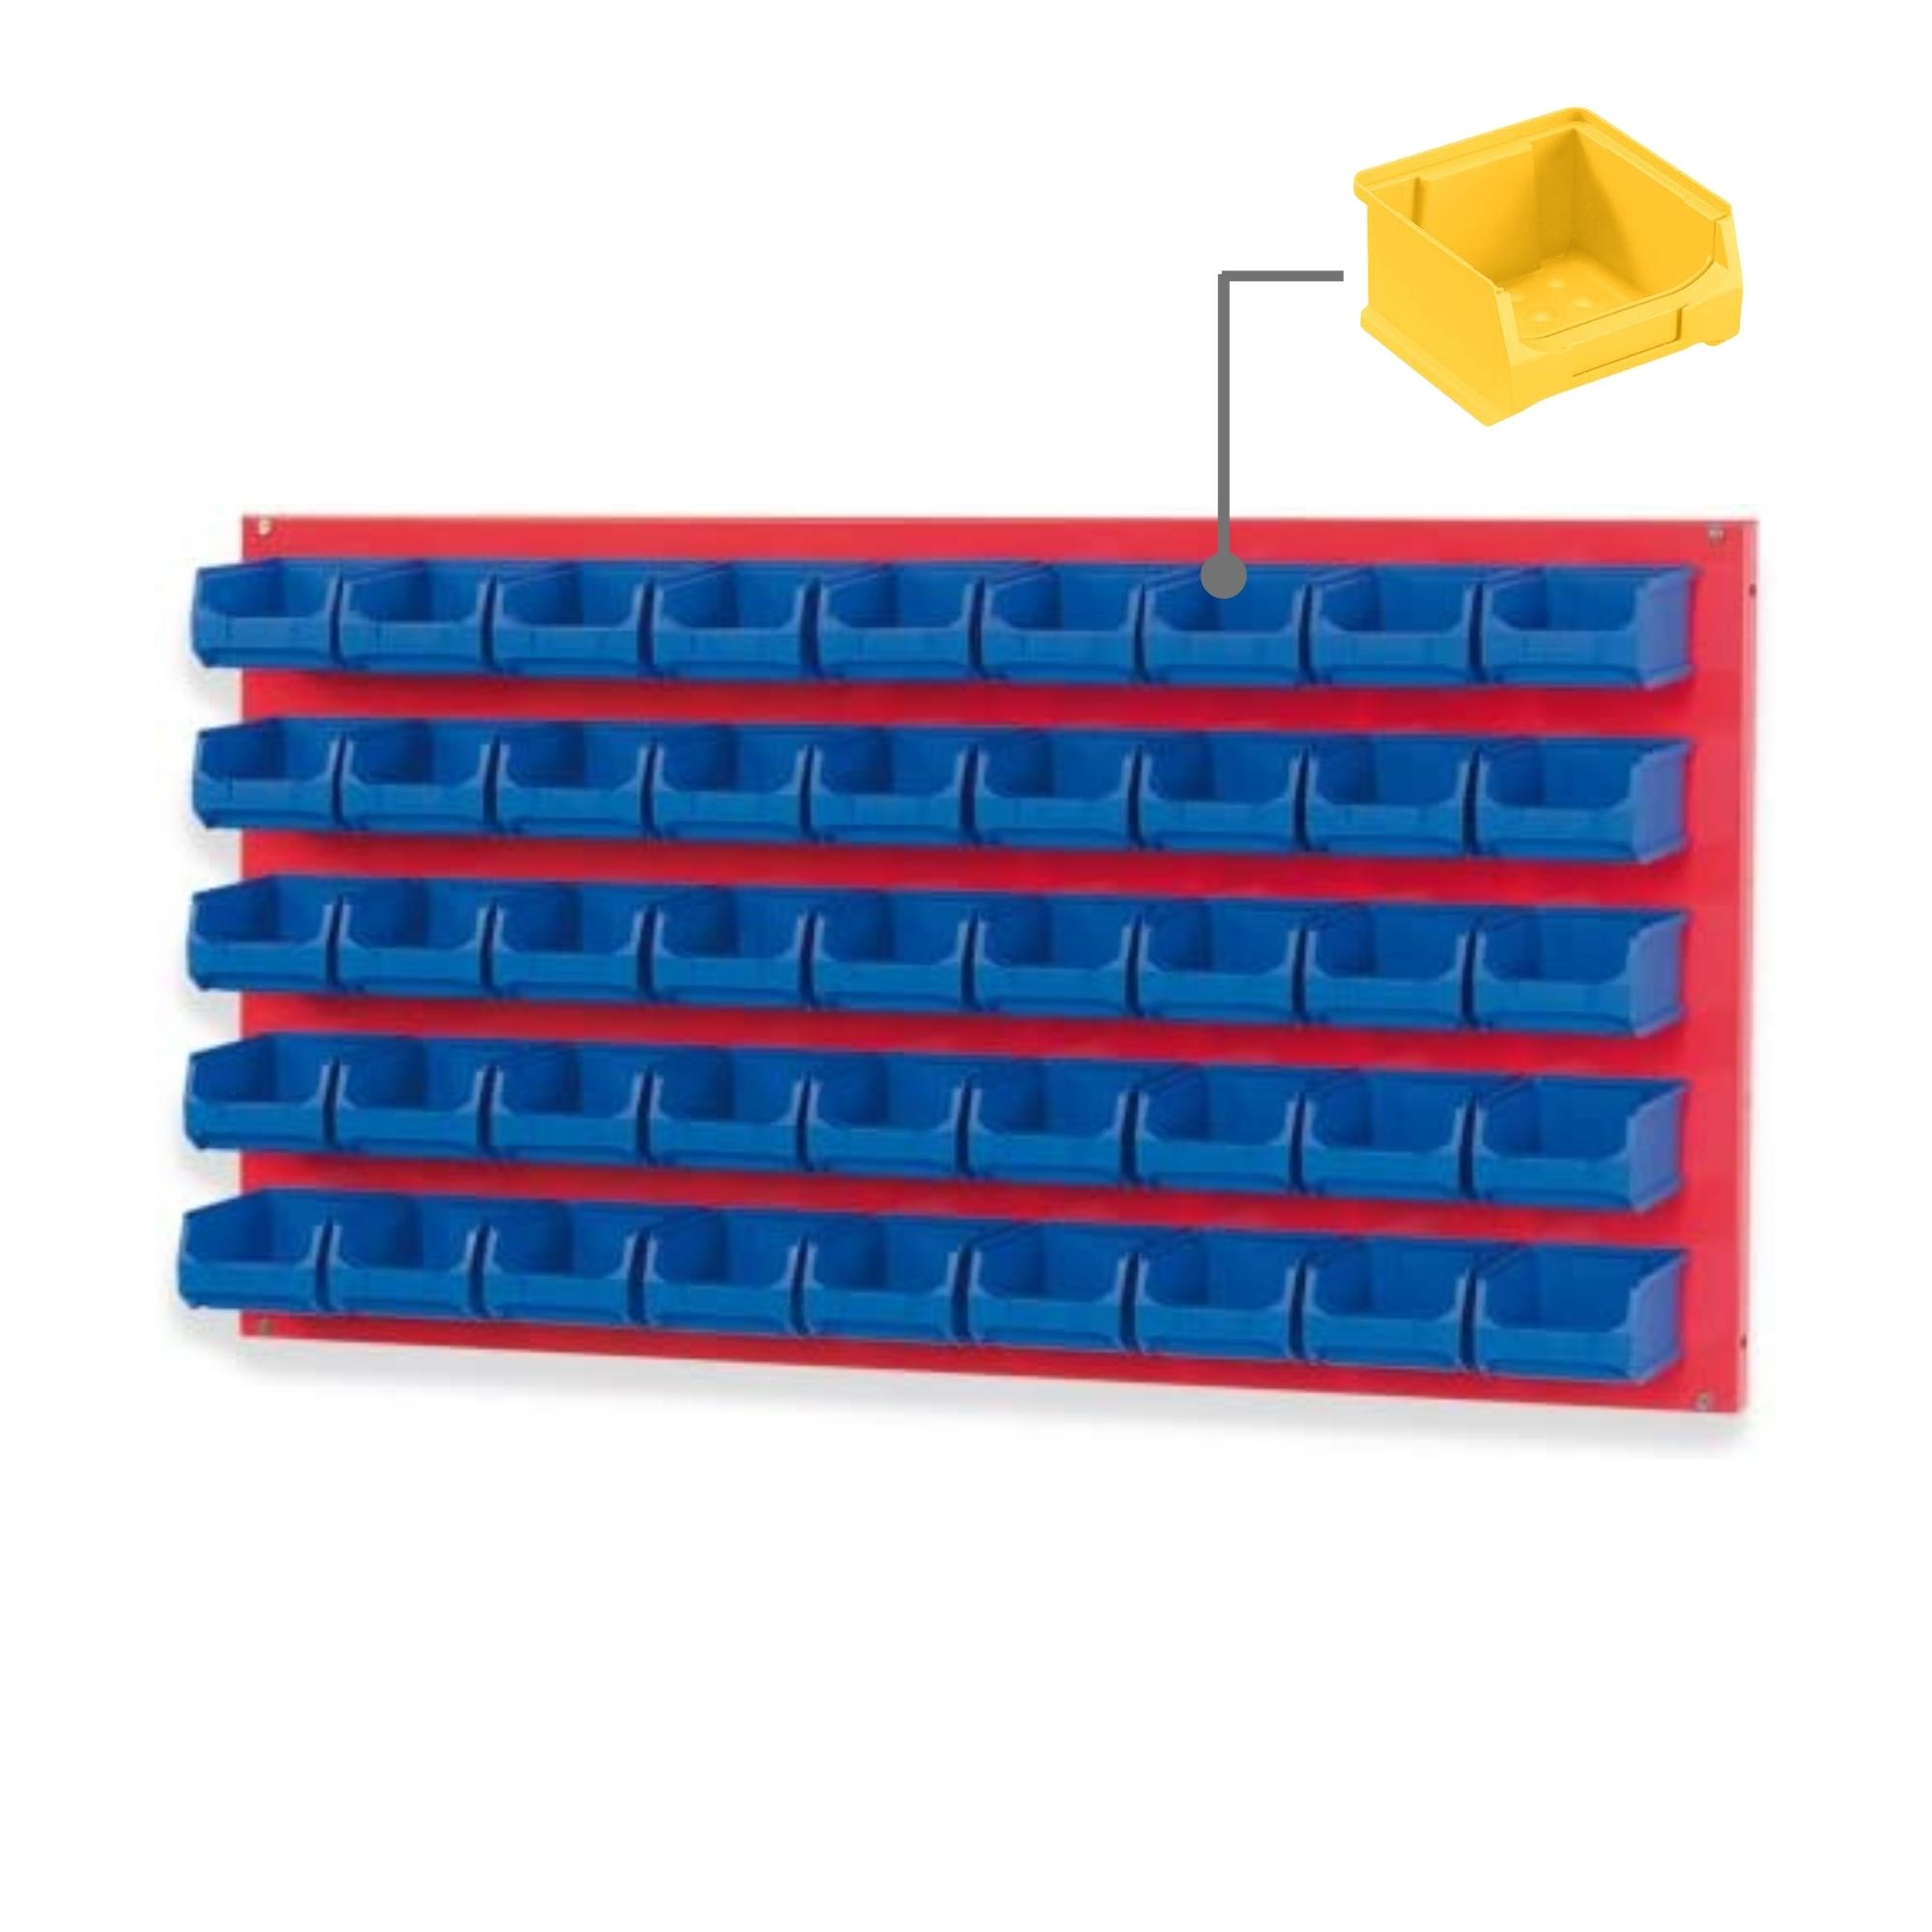 Trägersystem Rote Systemplatte mit 45x gelben Sichtlagerboxen 1.0 | Maße HxB 50x100cm | Sichtlagerbox, Sichtlagerbehälter, Sichtlagerkasten